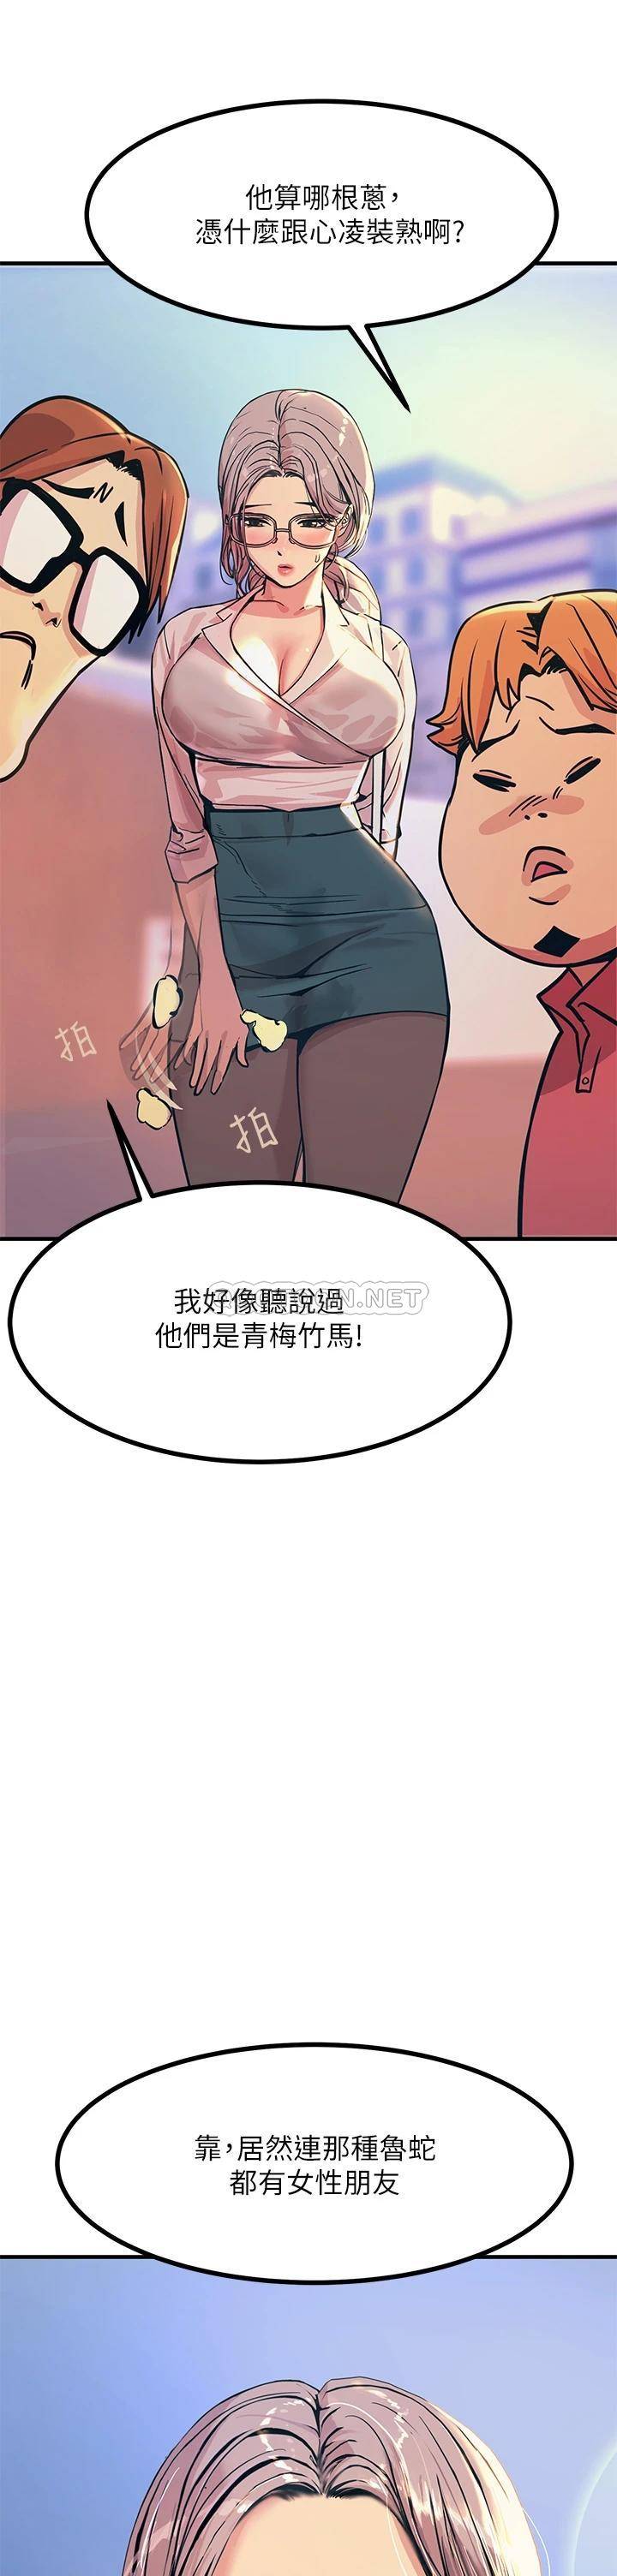 韩国污漫画 觸電大師 第2话 和性感胴体的亲密接触 15